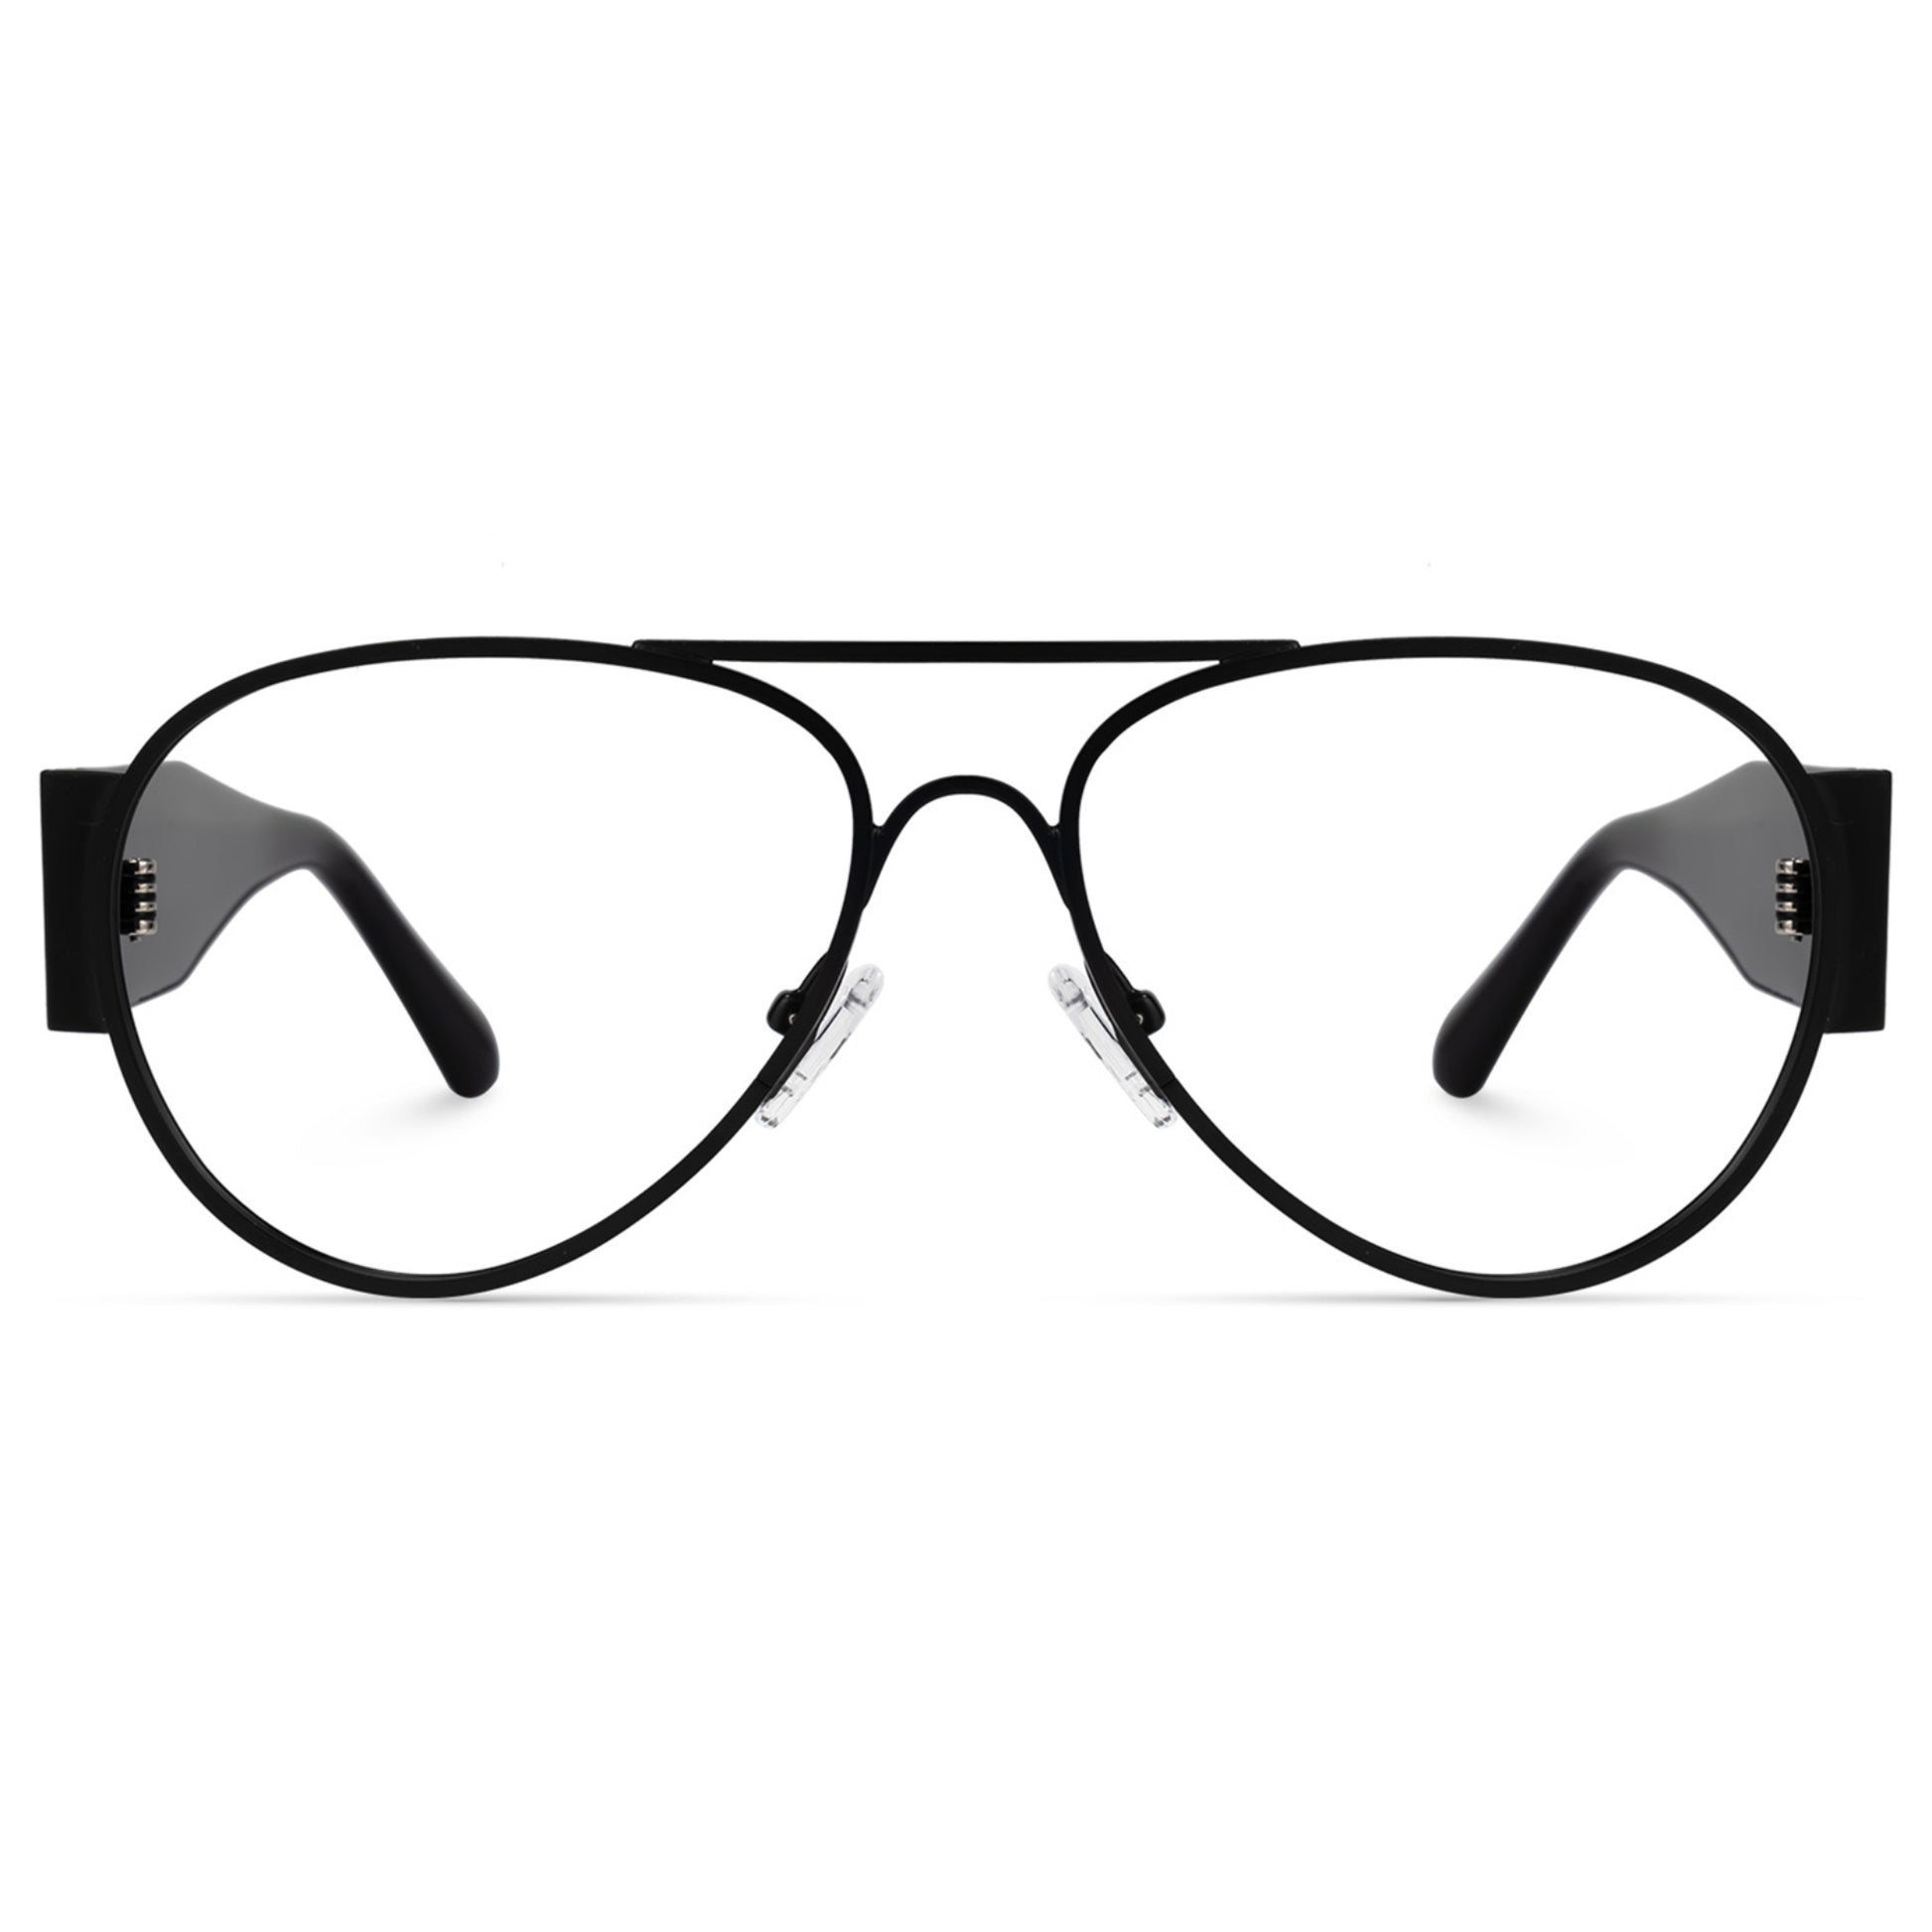 Henry - Blue Light Glasses - Optin Store 